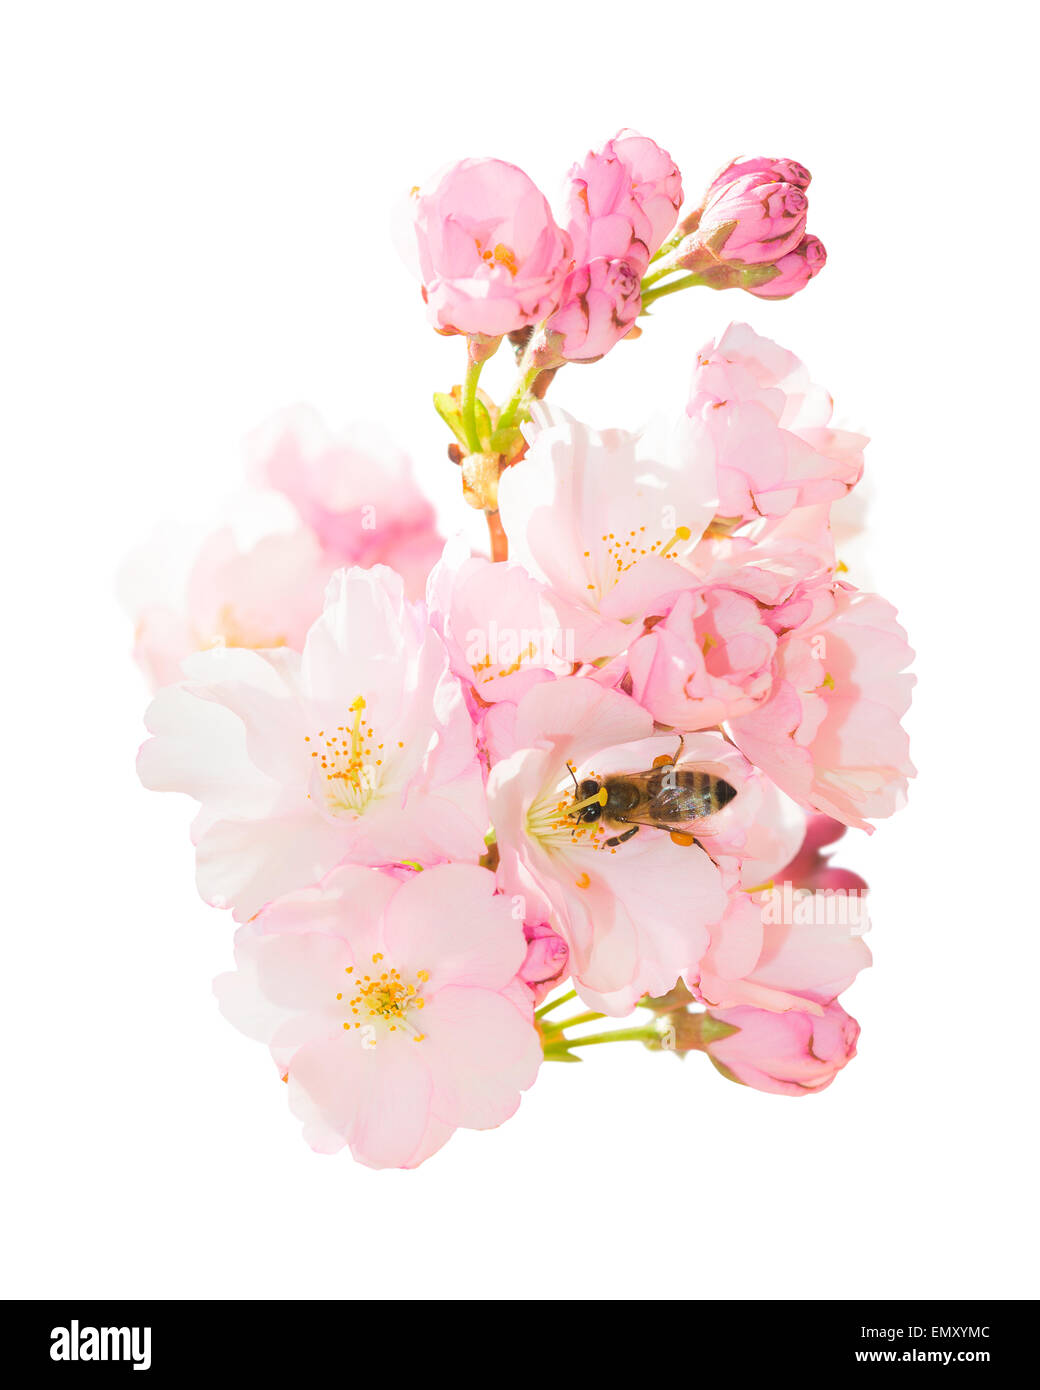 Isolé sur blanc bouquet de fleur de printemps fleurs roses avec des fleurs de printemps la pollinisation des abeilles jardin fruits du verger Banque D'Images